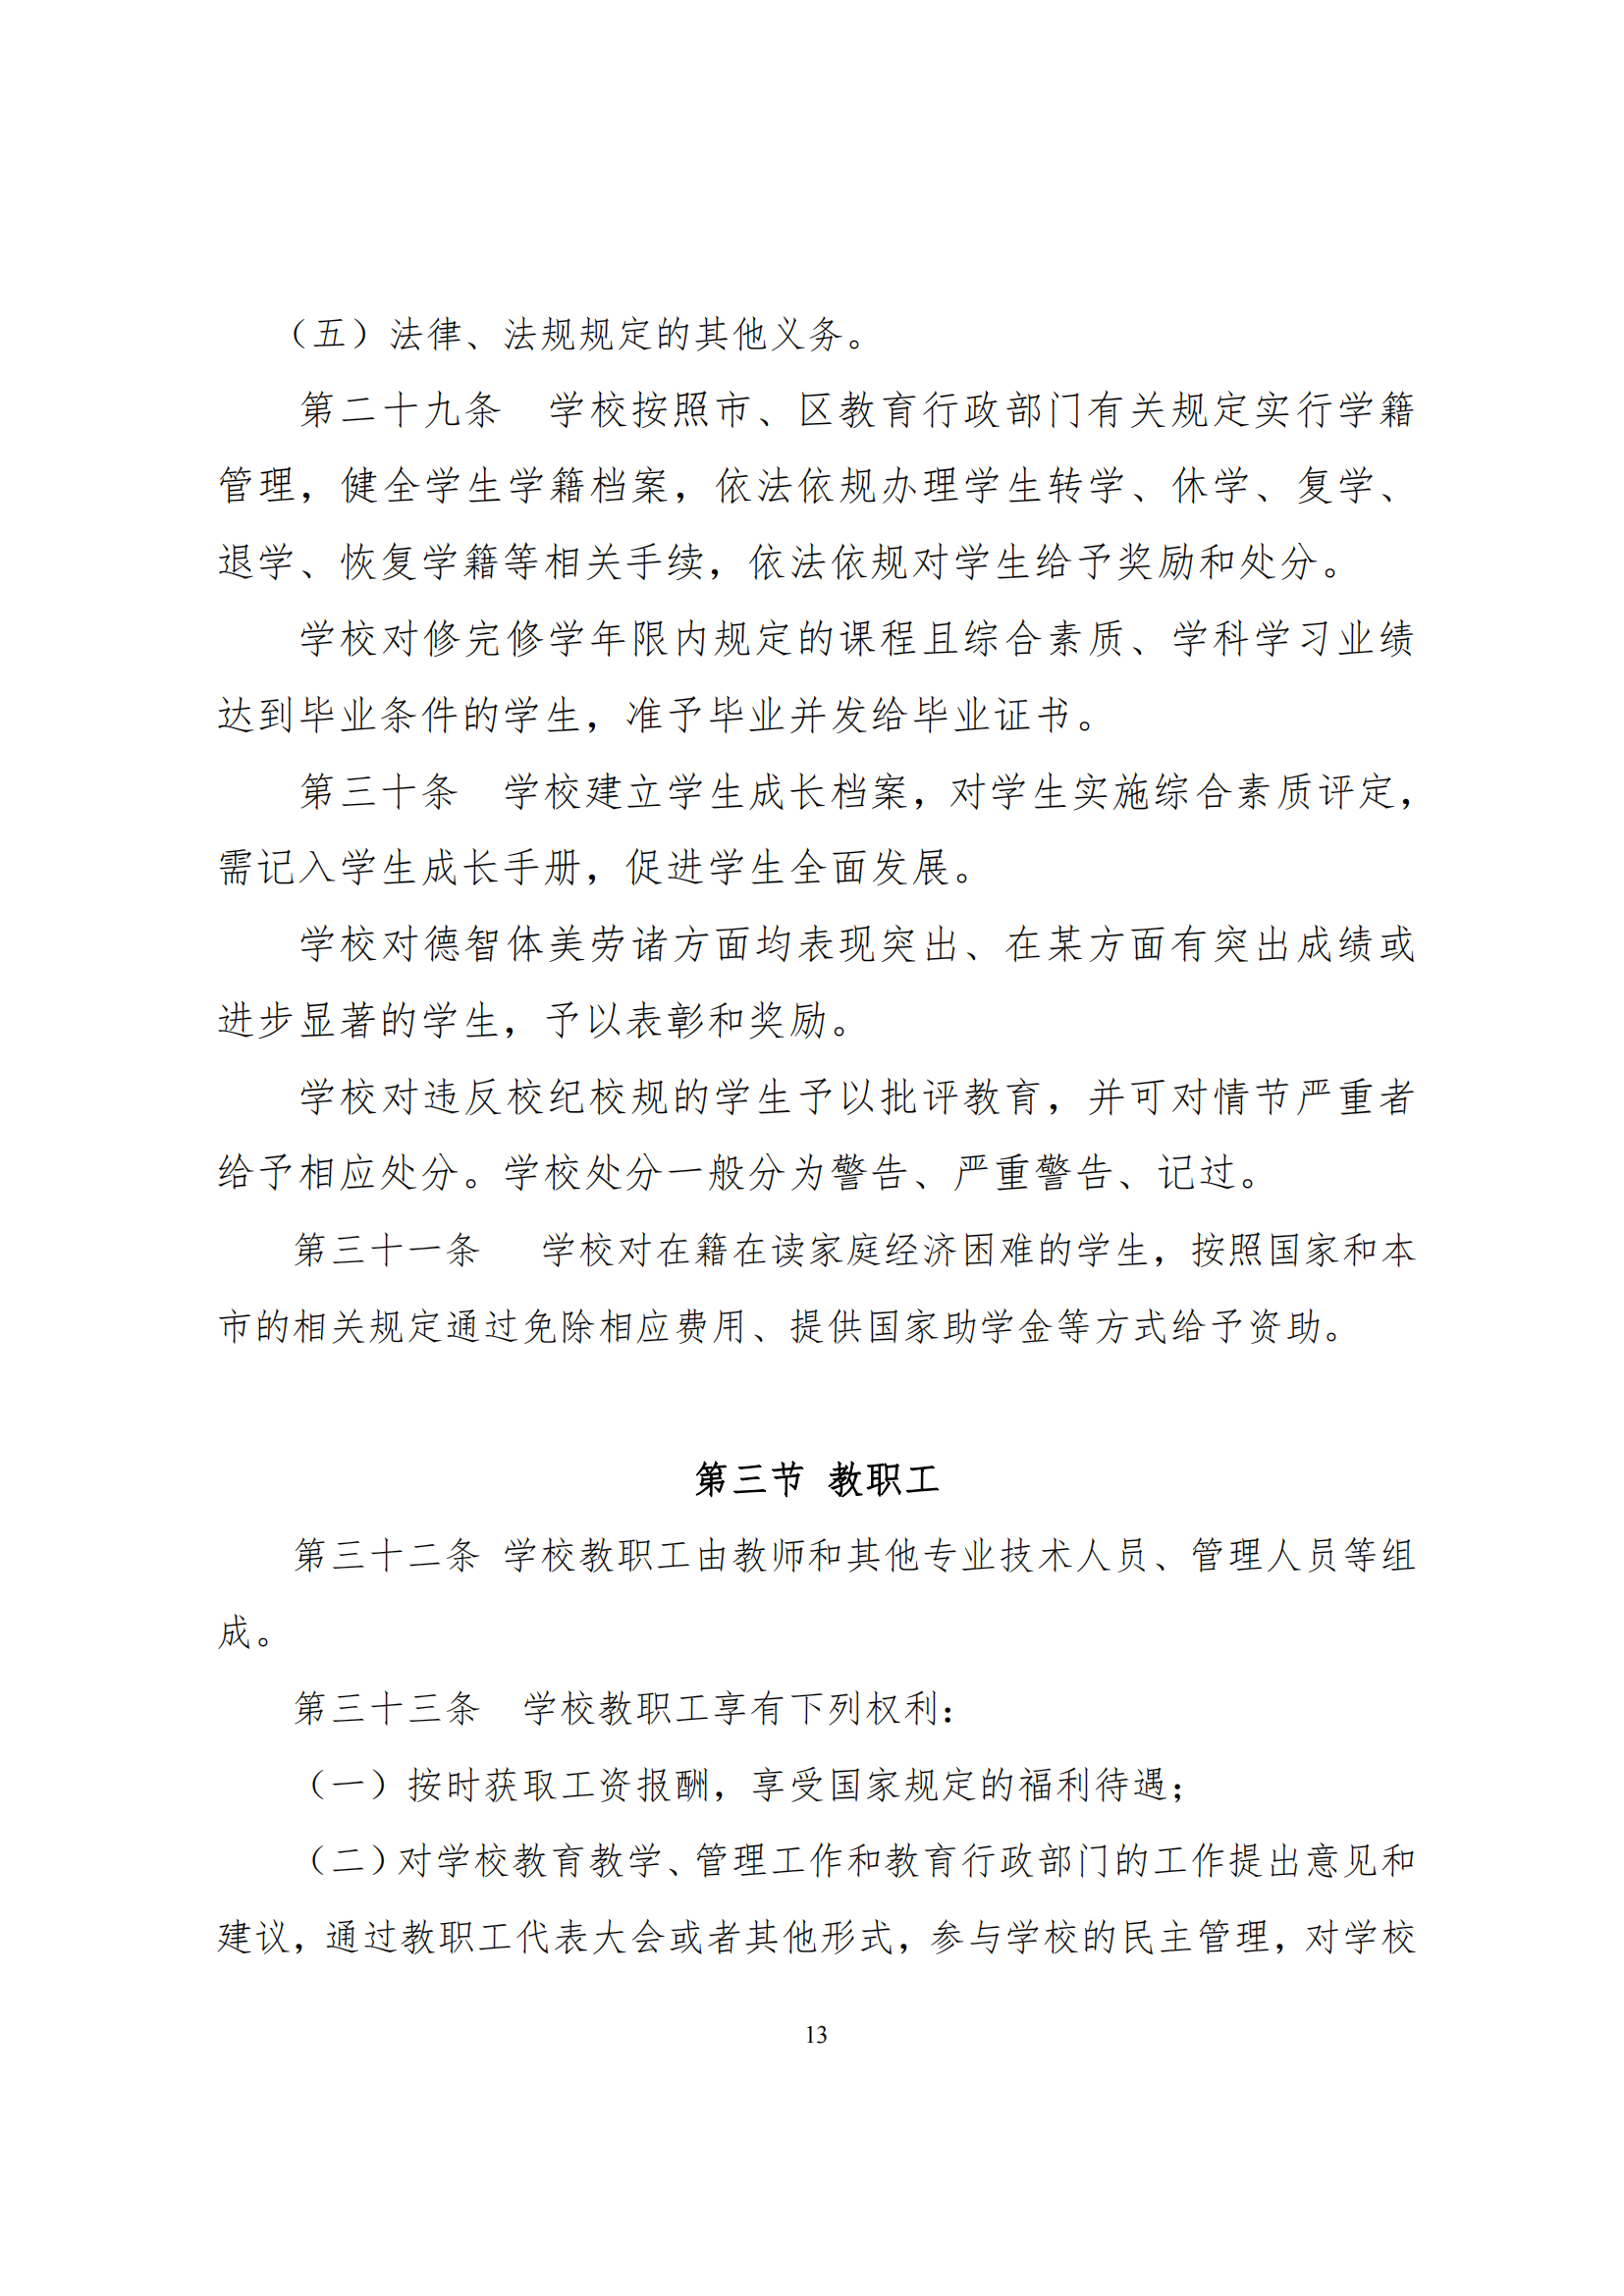 上海市徐汇区求知小学学校章程（提交稿）_12.png